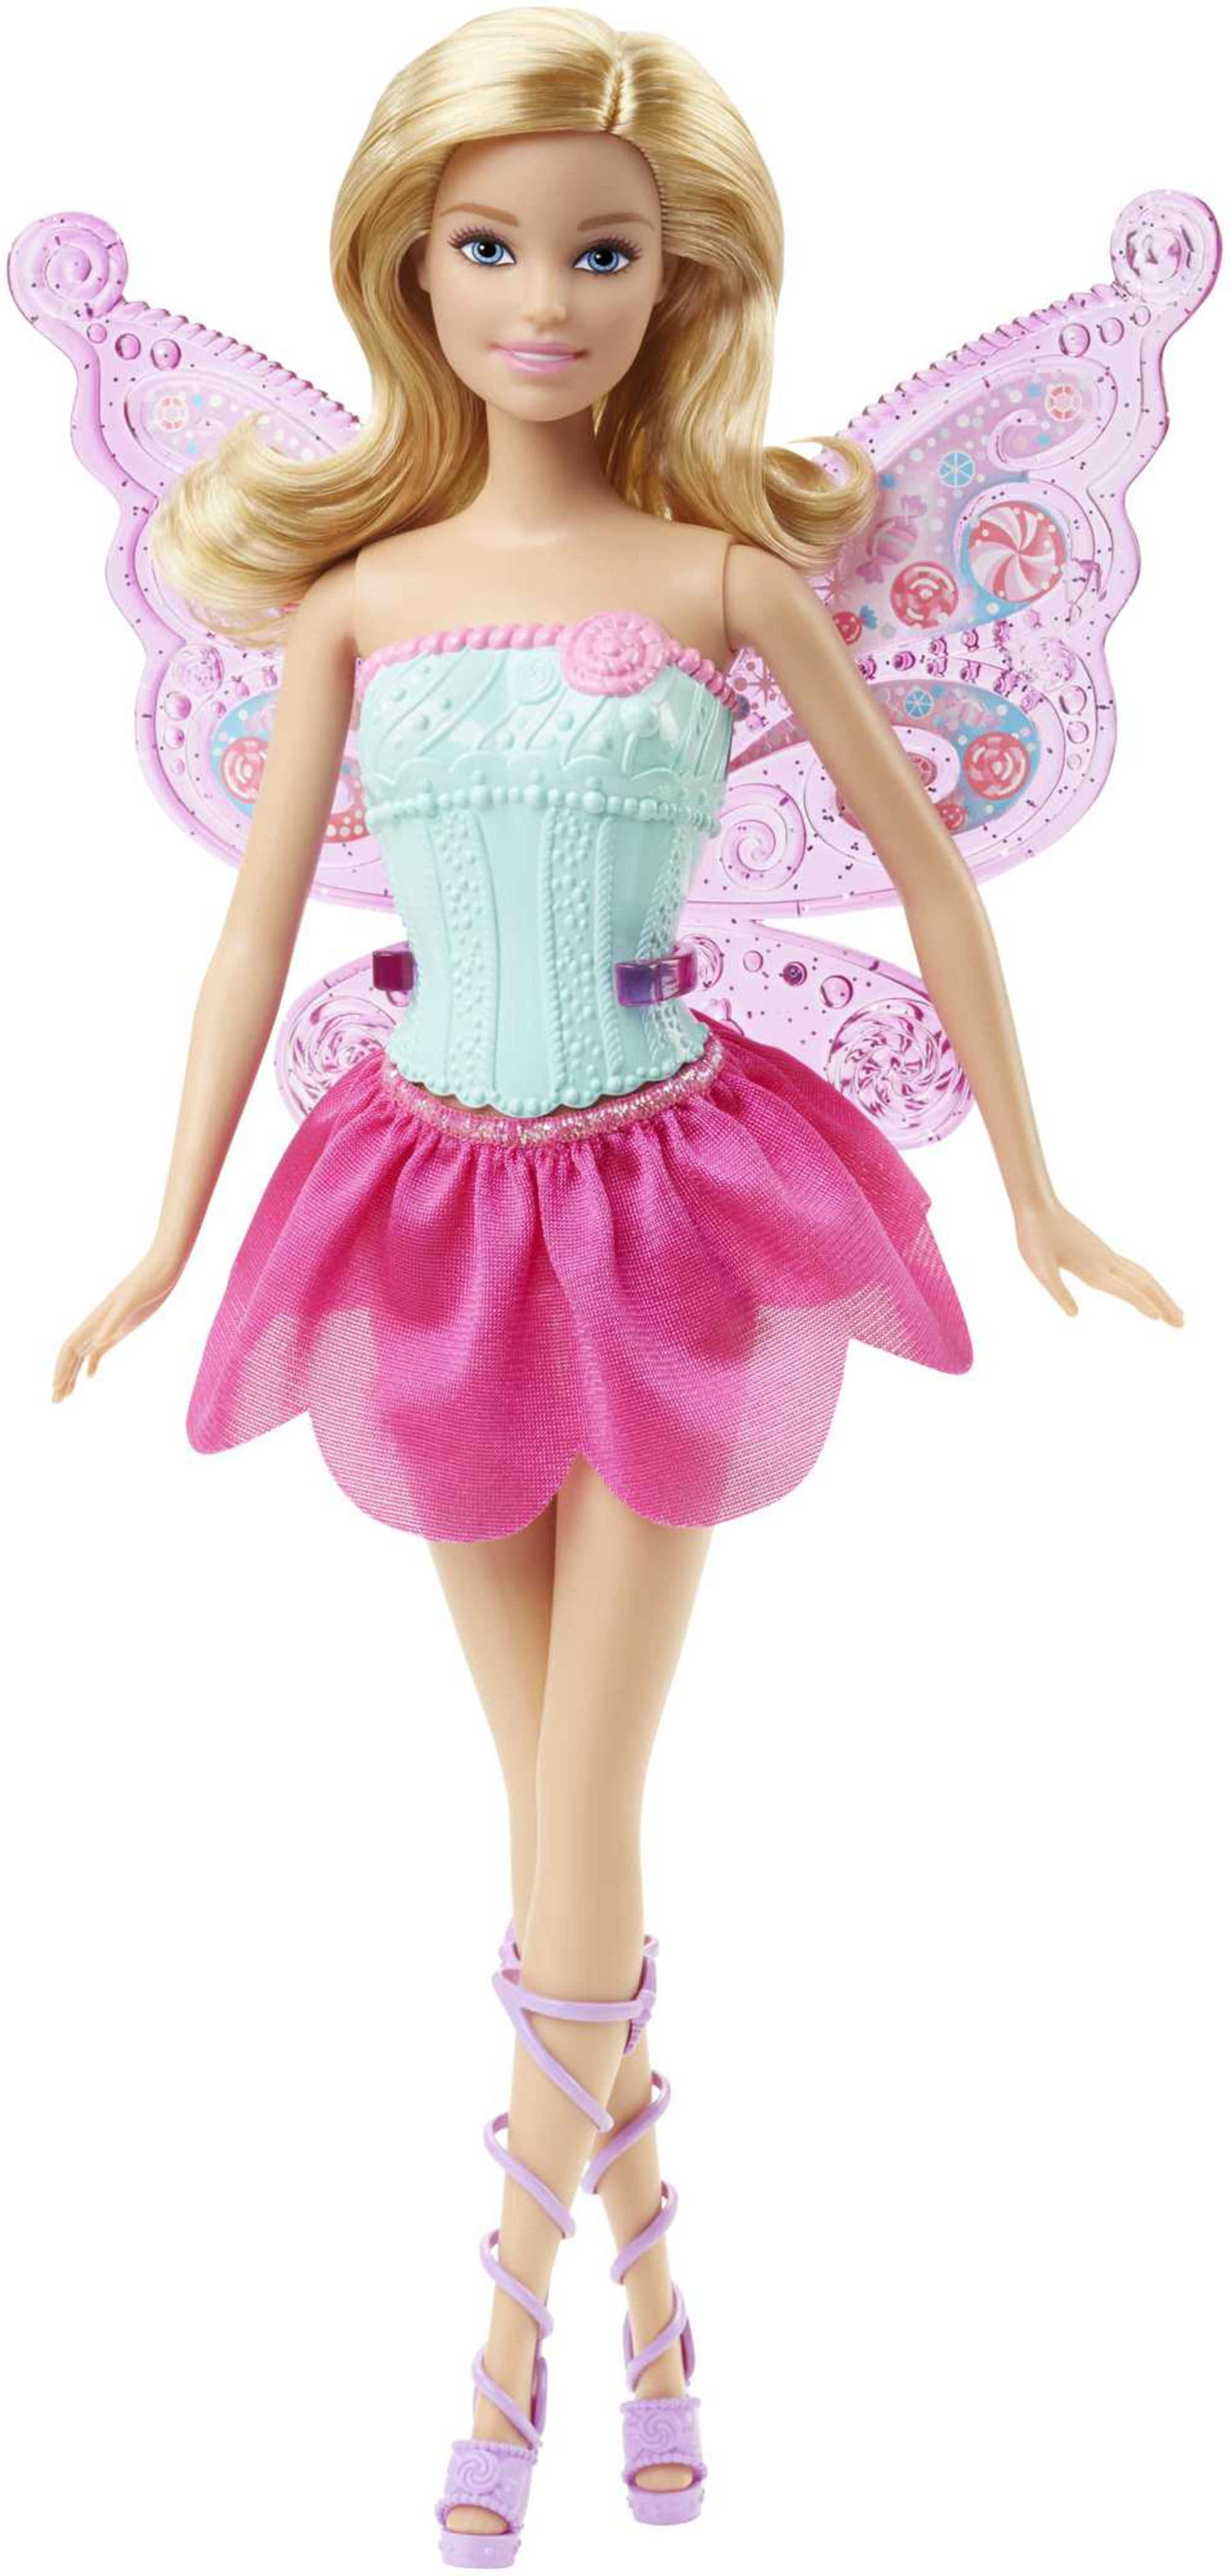 Barbie Féerie 3 en 1 | Mattel